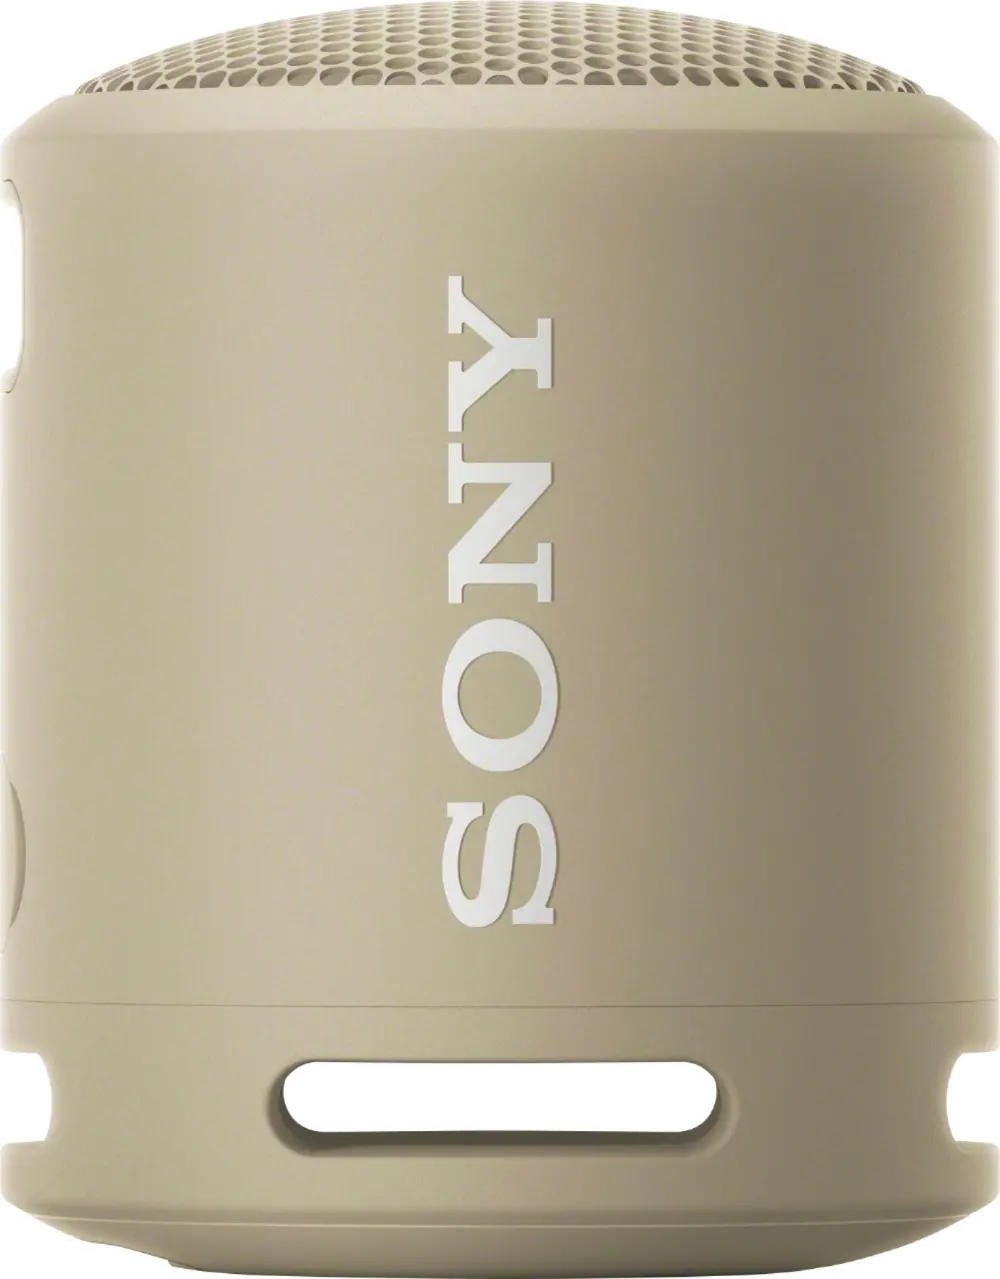 SRSXB13/CZ Sony XB13 Portable Bluetooth Speaker - Taupe-1